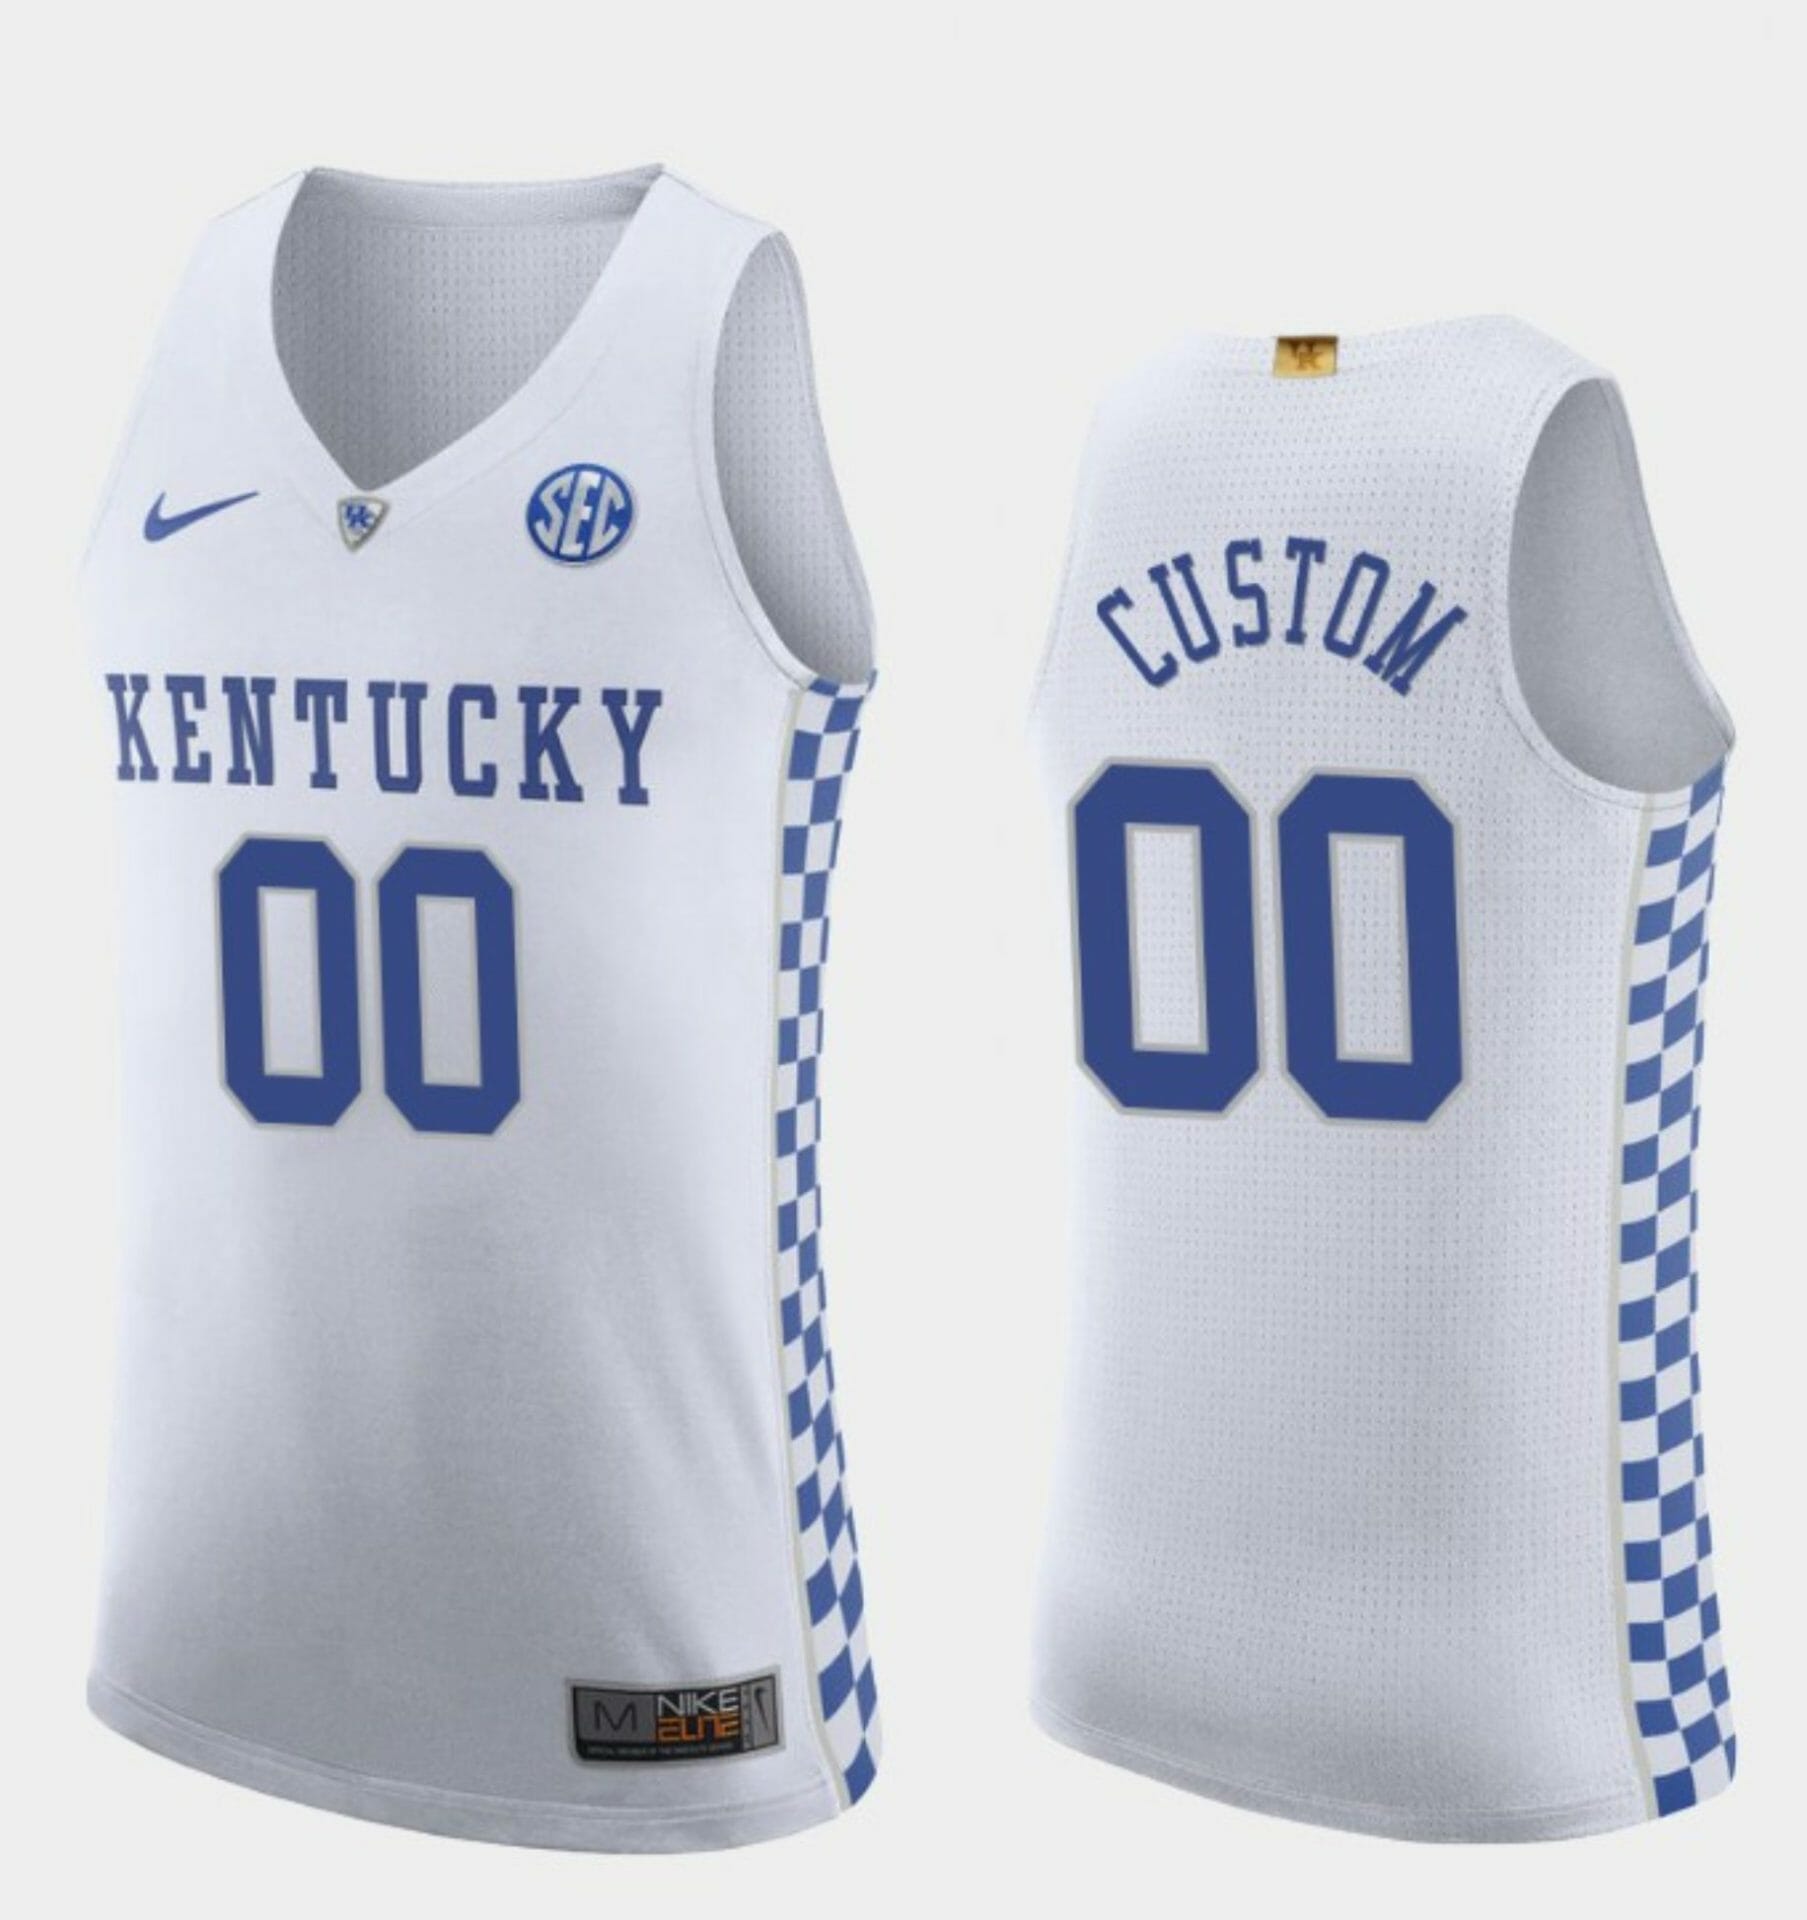 Trending] Get New Custom Kentucky Wildcats Jersey White